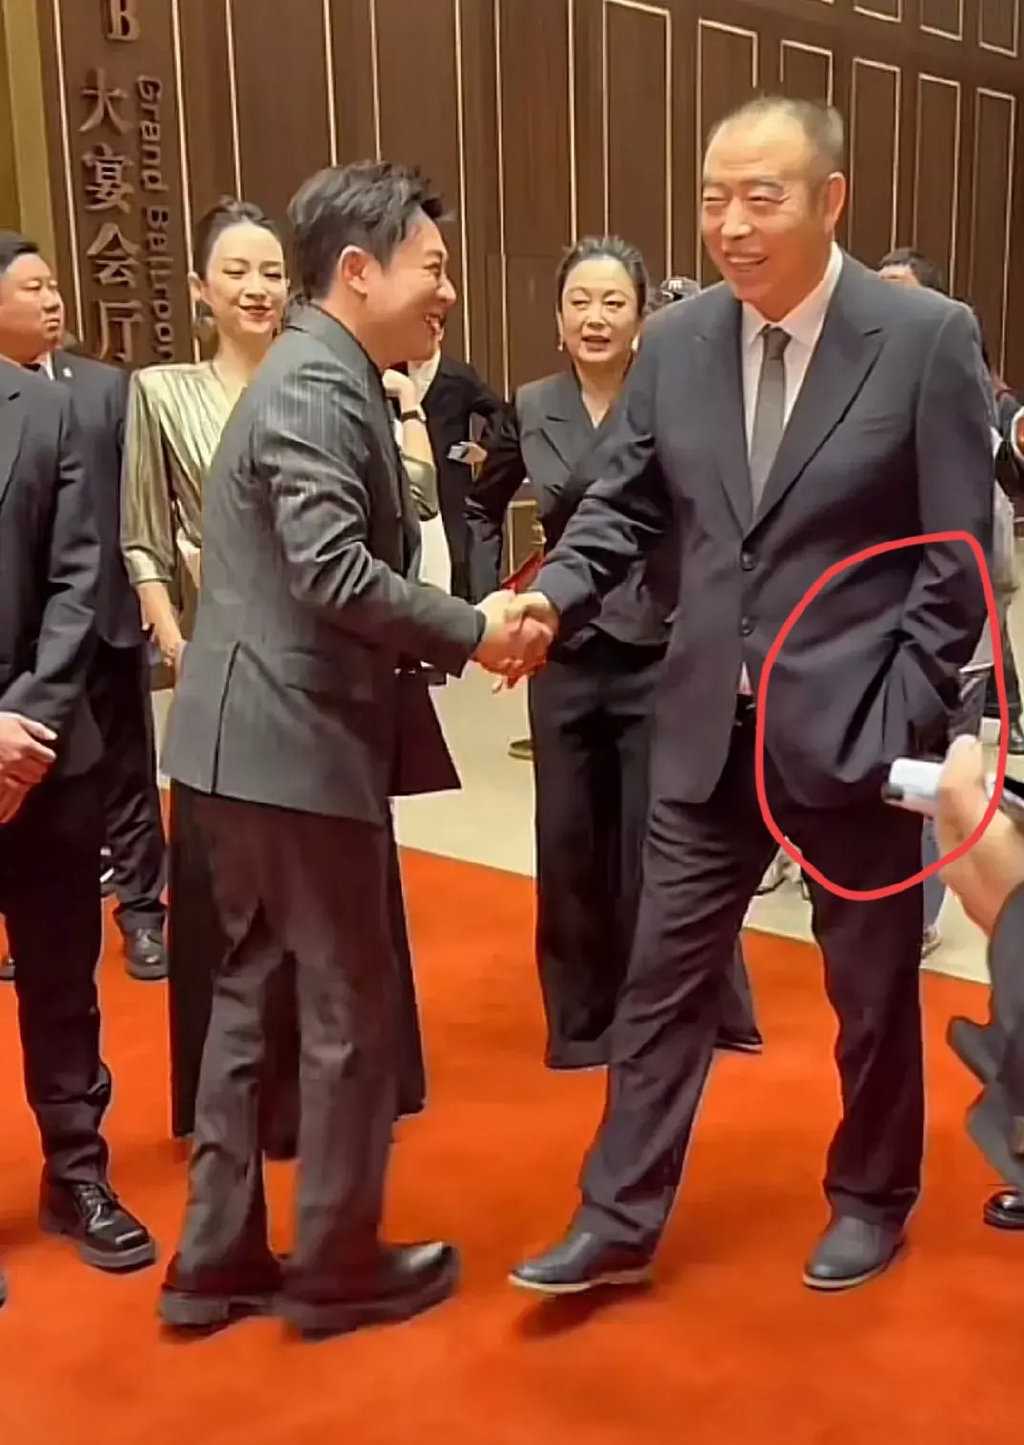 陈凯歌单手插兜和张颂文握手被骂 想问一下你们看视频了吗？